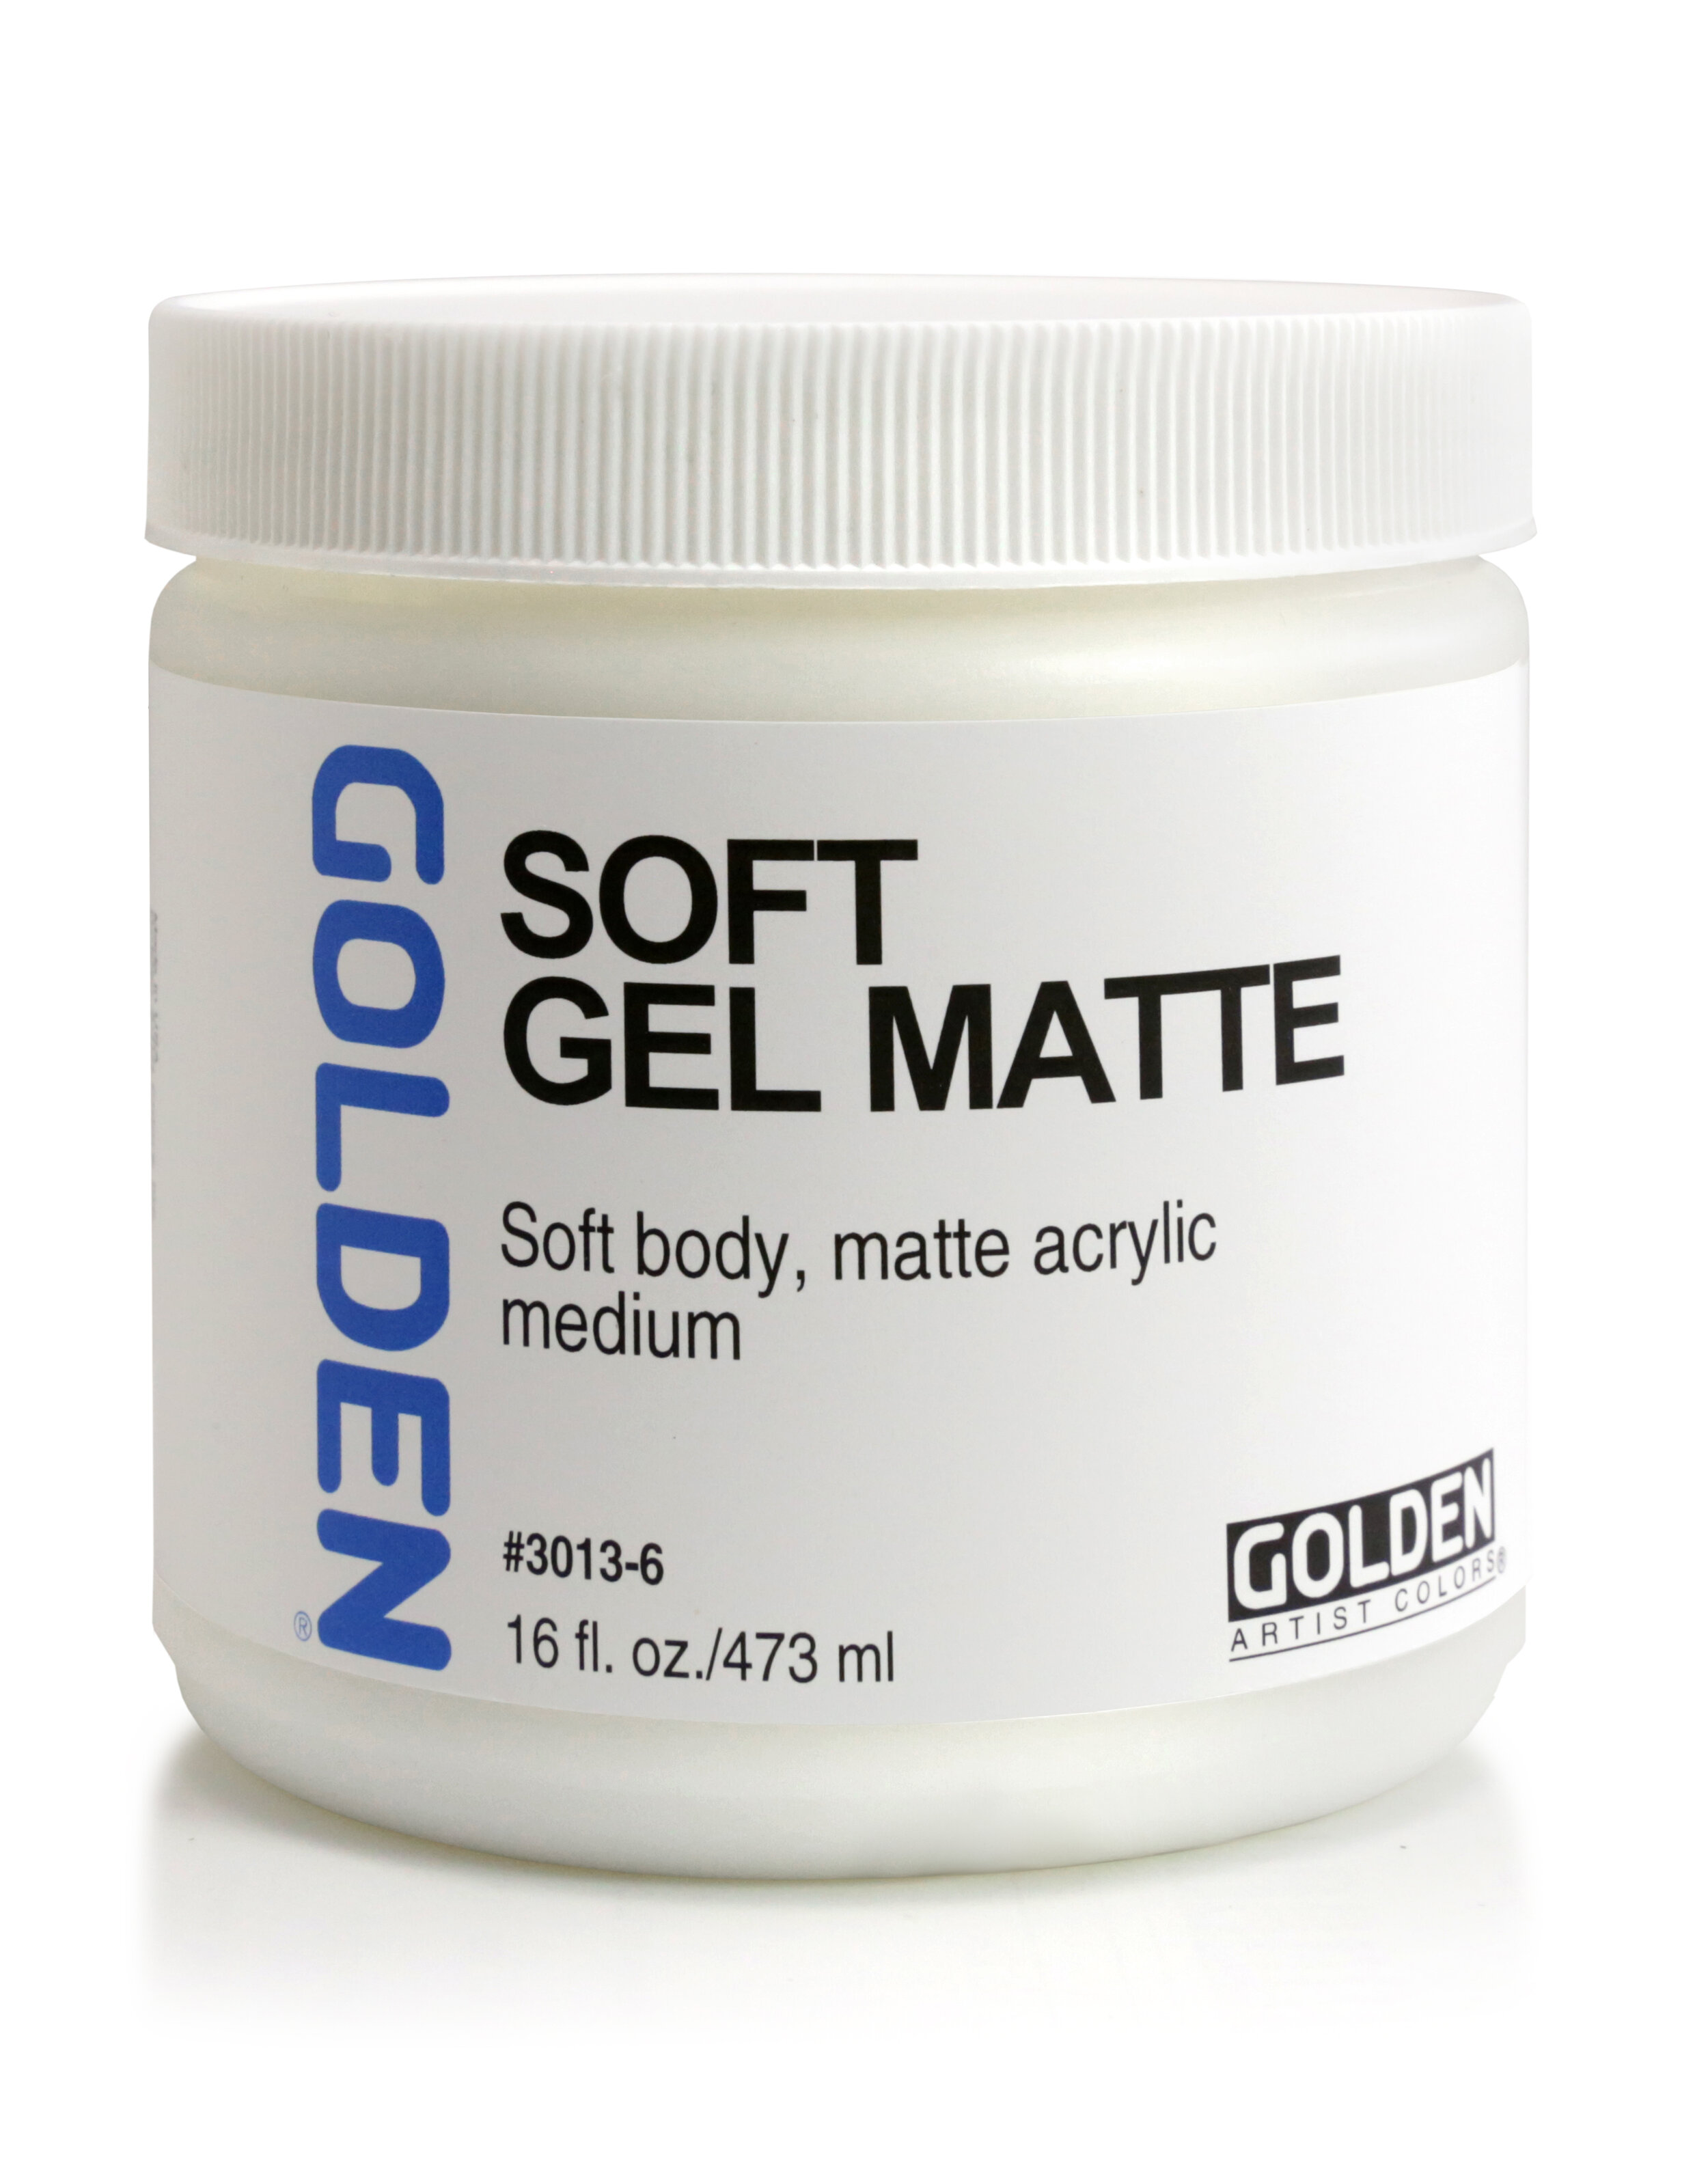  Golden Soft Matte Gel Medium-8 ounce : Beauty & Personal Care